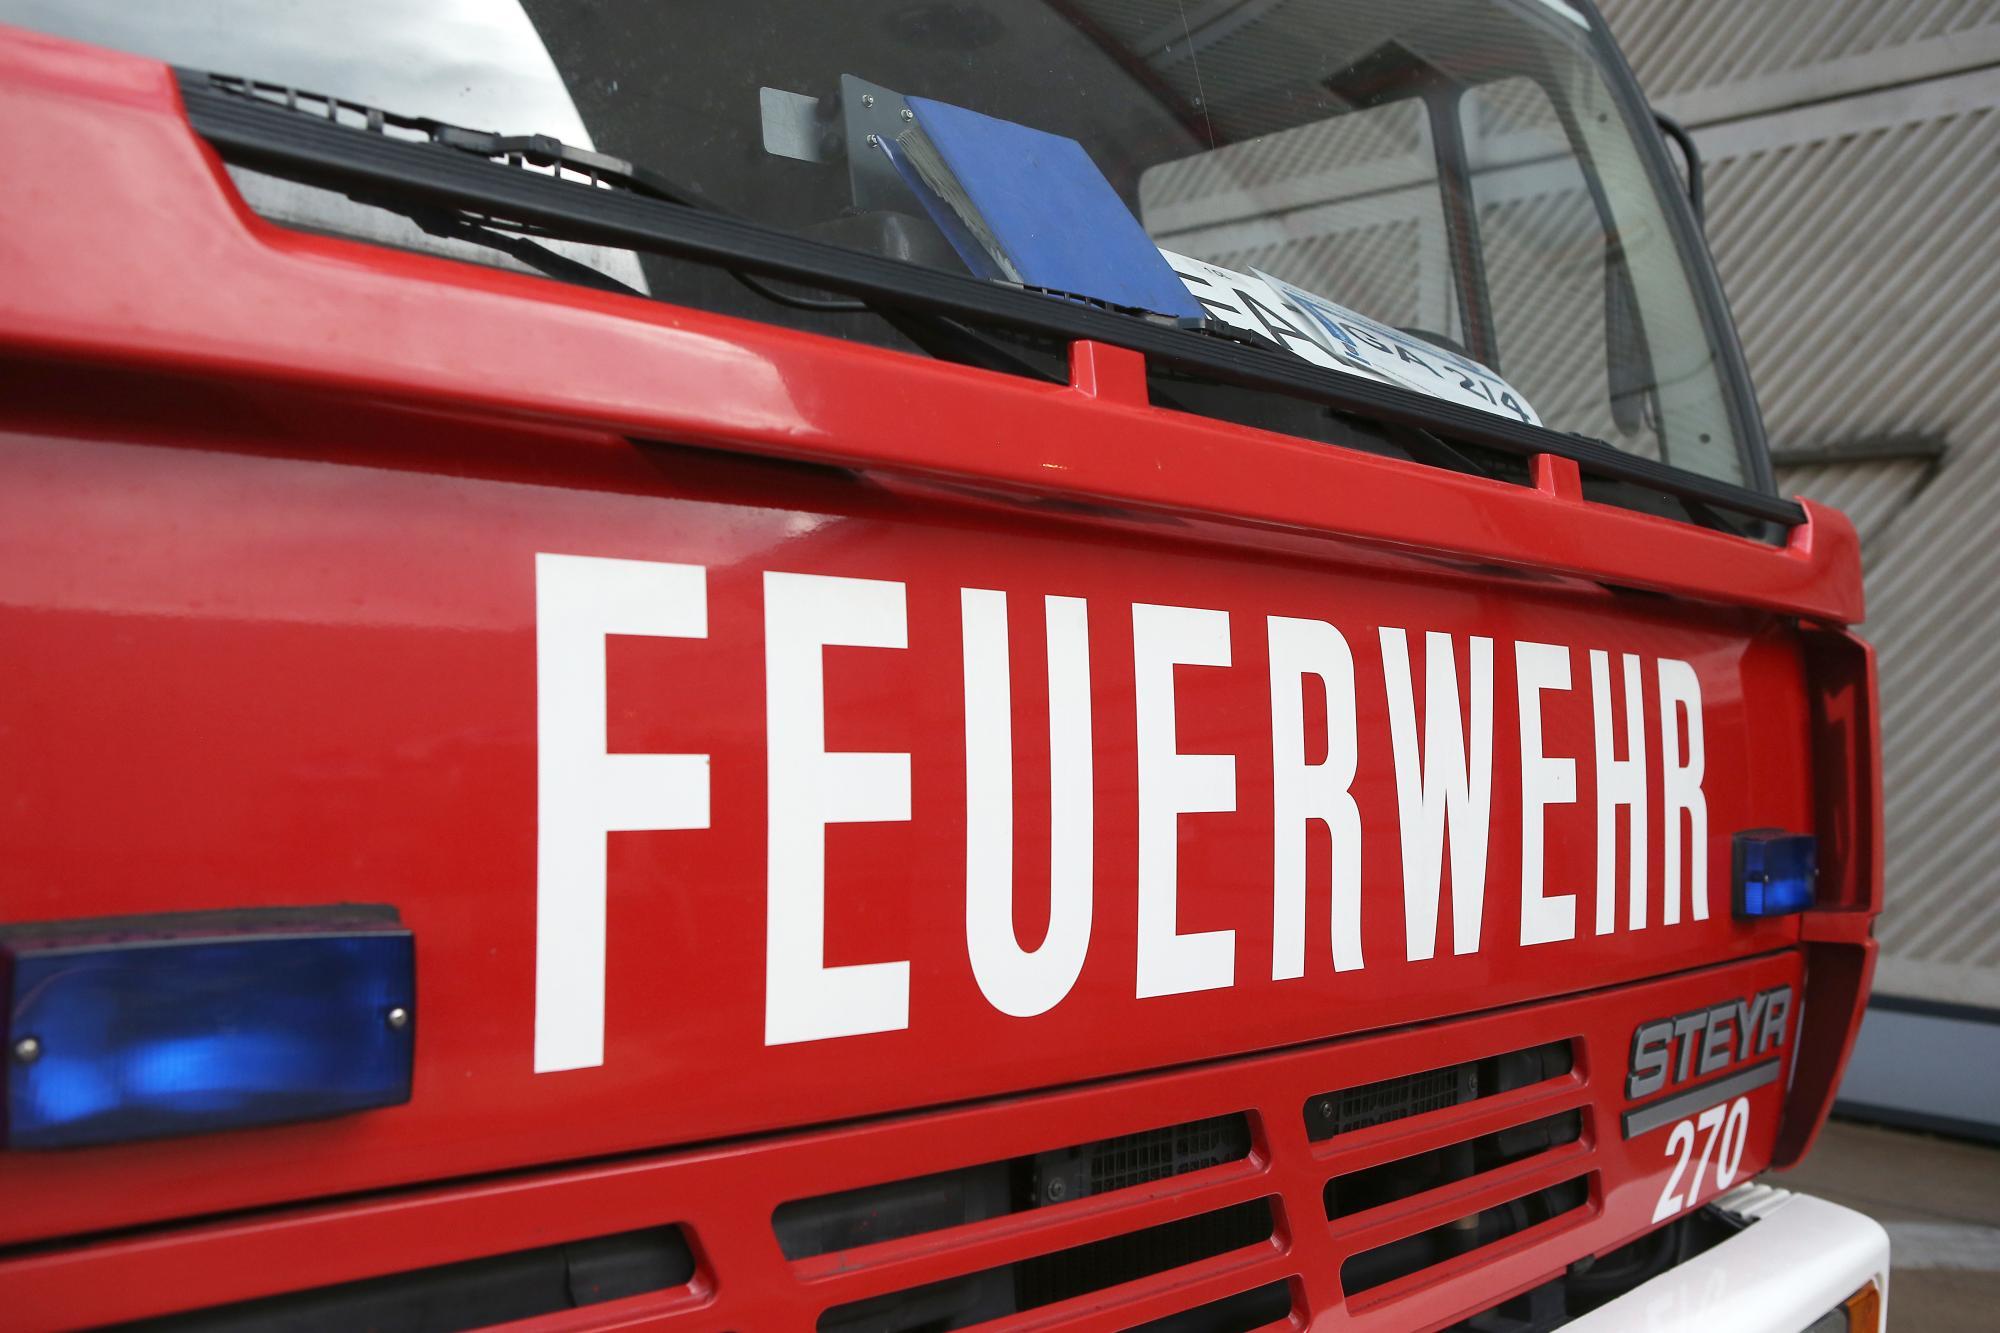 Aufzug-Brand in Wien: Mutter und Baby mussten reanimiert werden